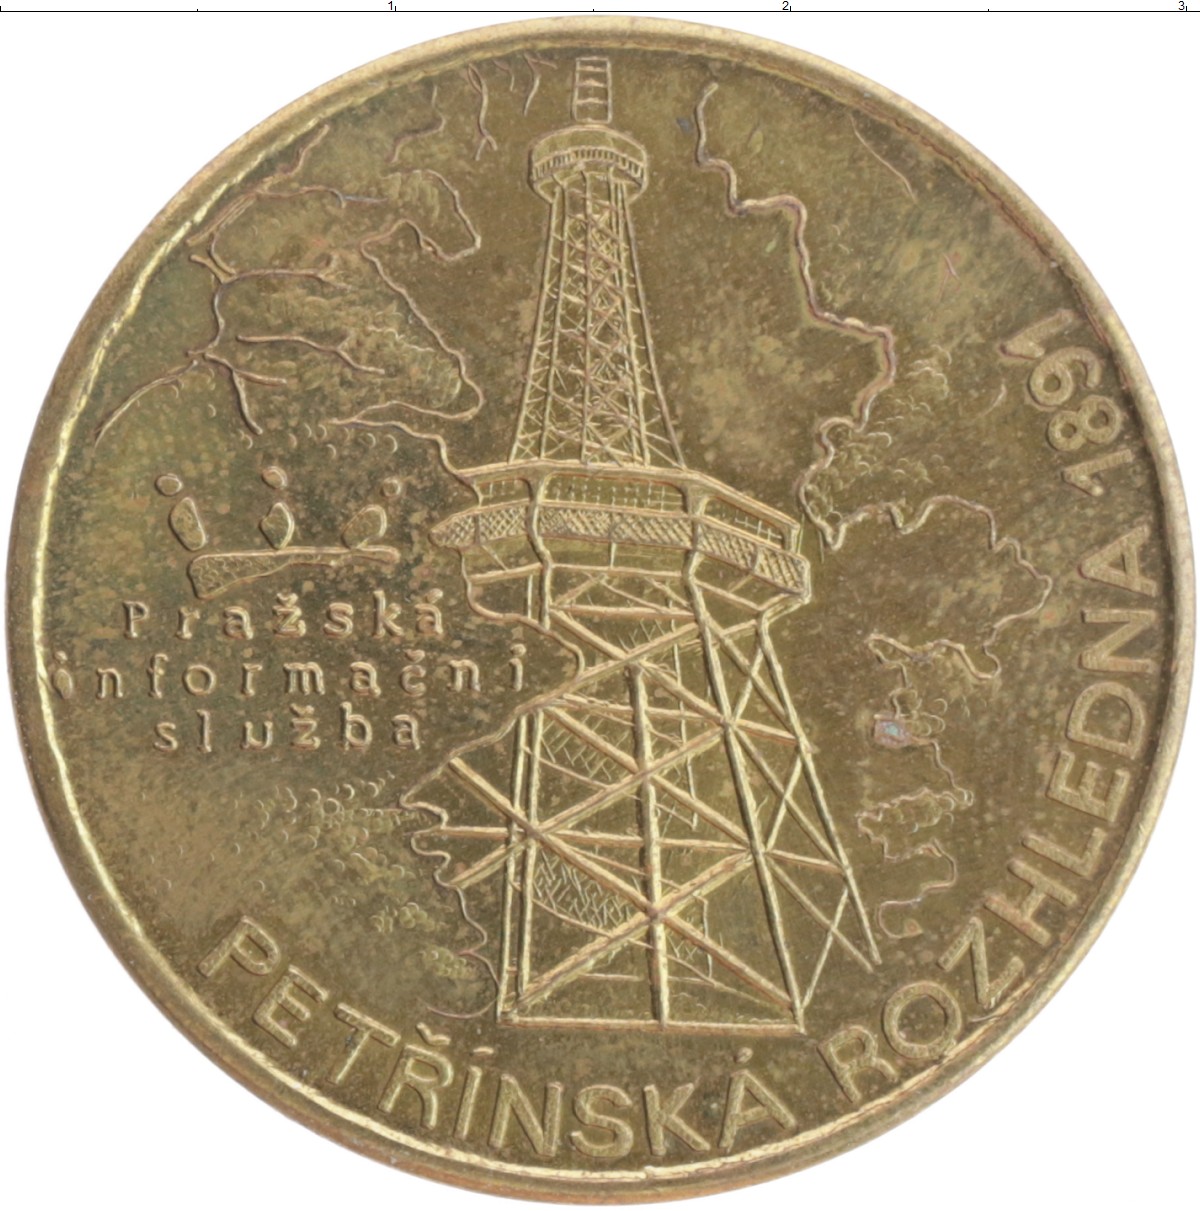 Монета Жетон Чехии Бронза Пражская информационная служба